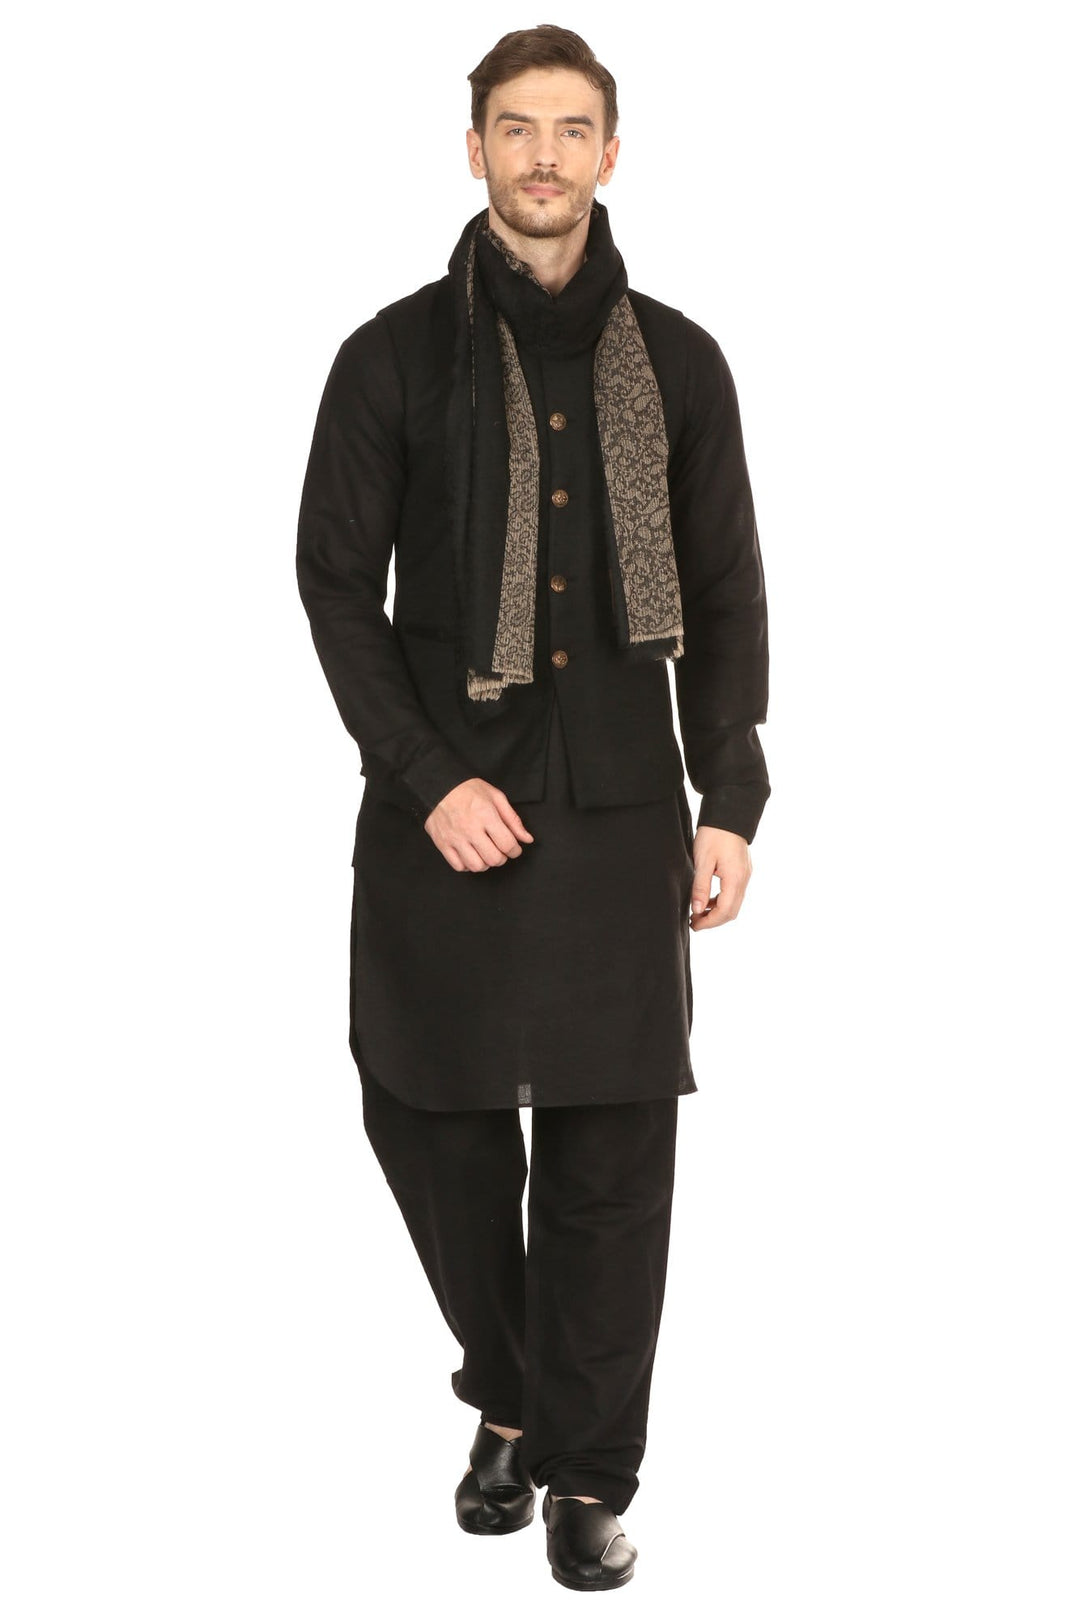 Pashtush India 70x200 Mens Fine Wool Reversible Muffler, Soft and Warm - Black